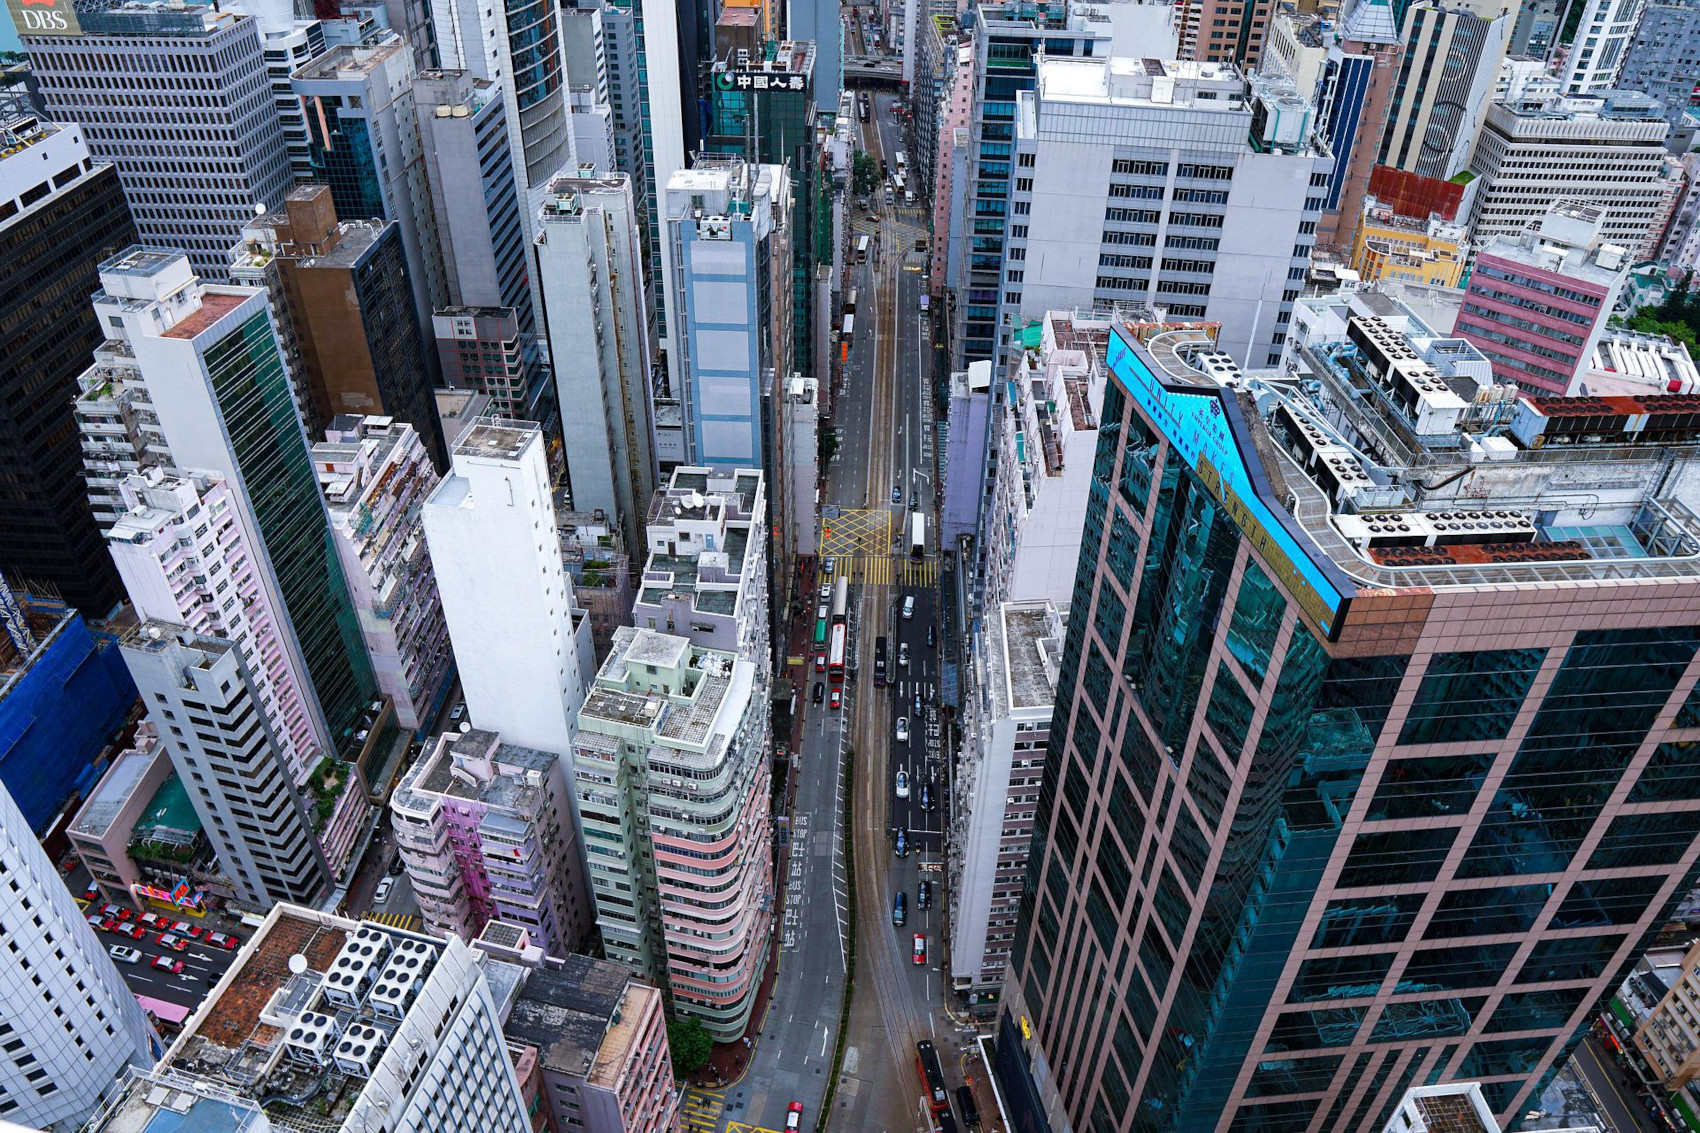 Hong Kong - Image by Jude Joshua